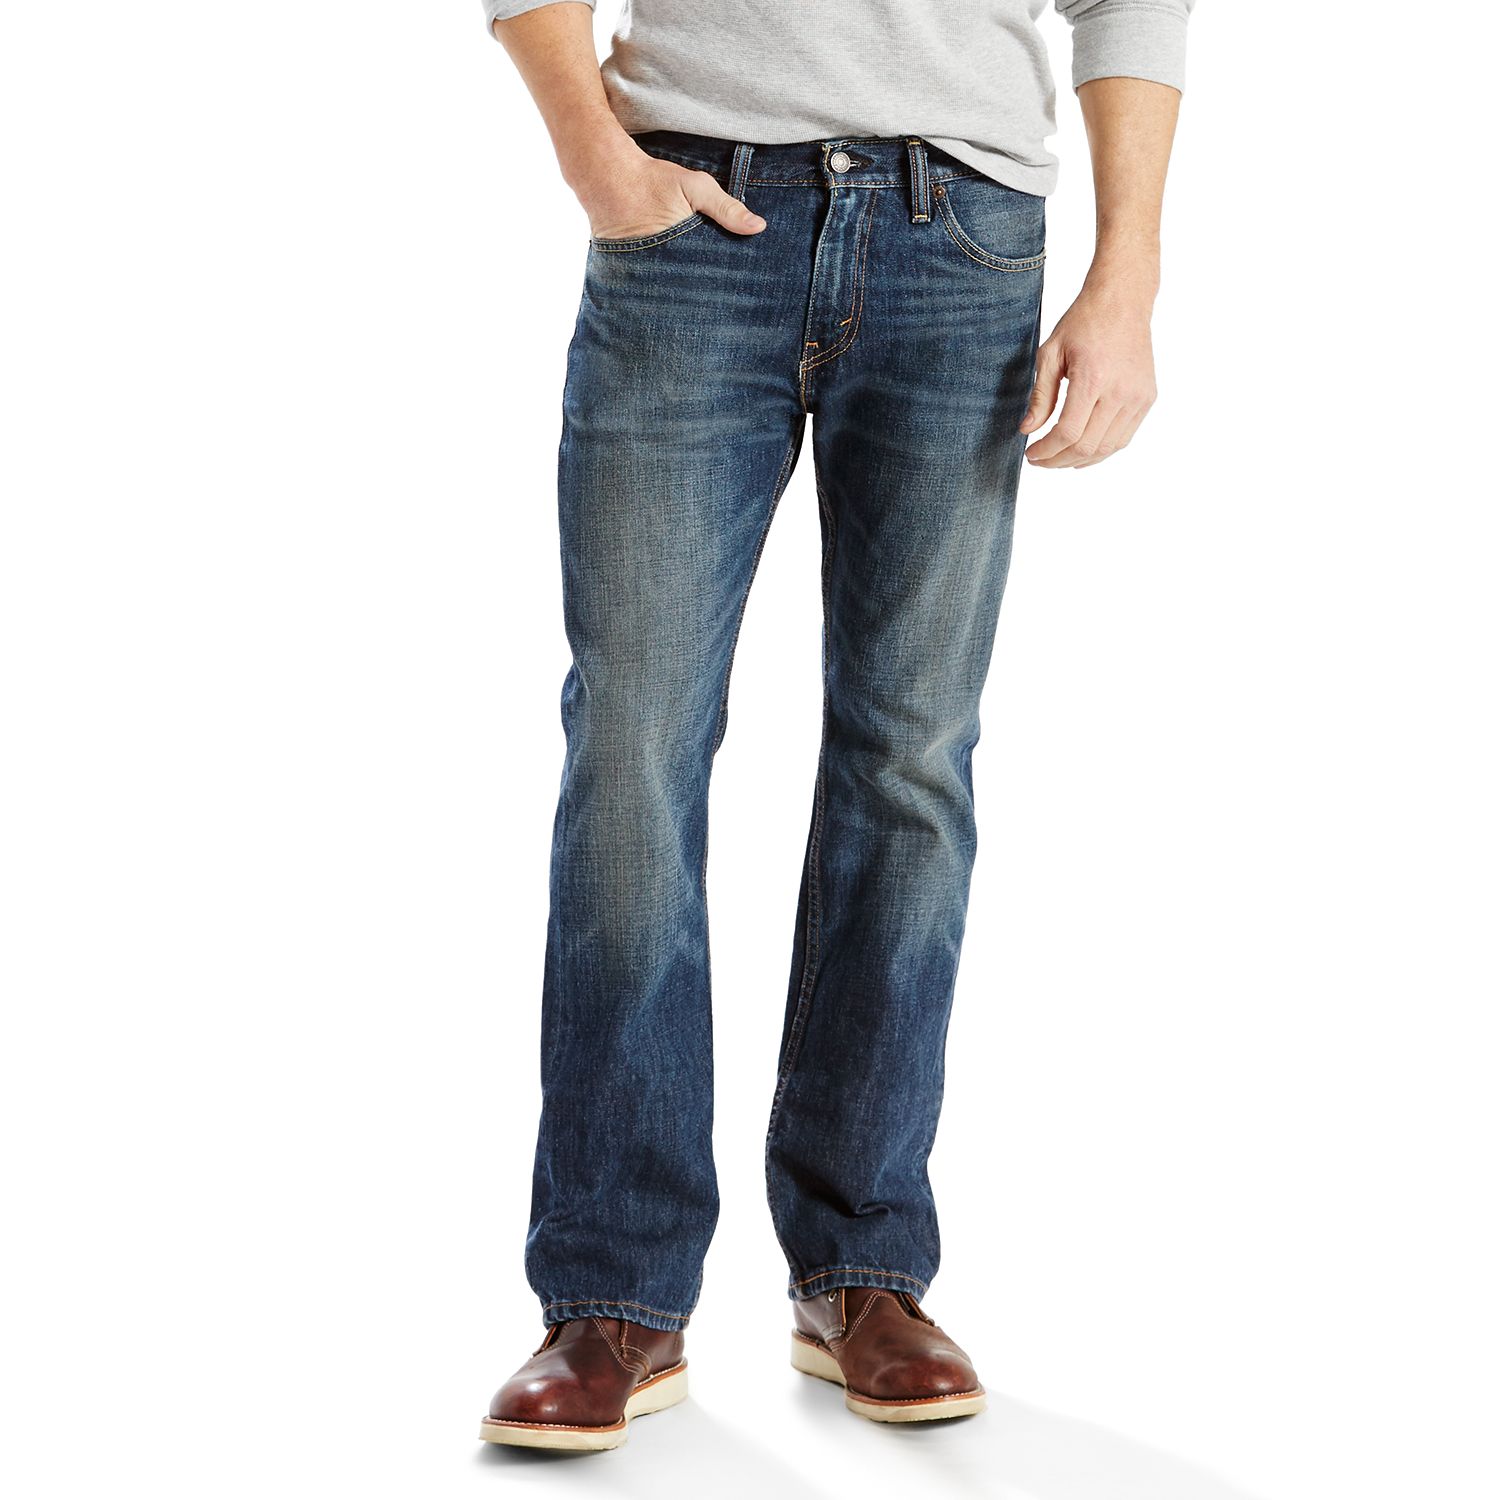 kohl's levi's 505 men's jeans